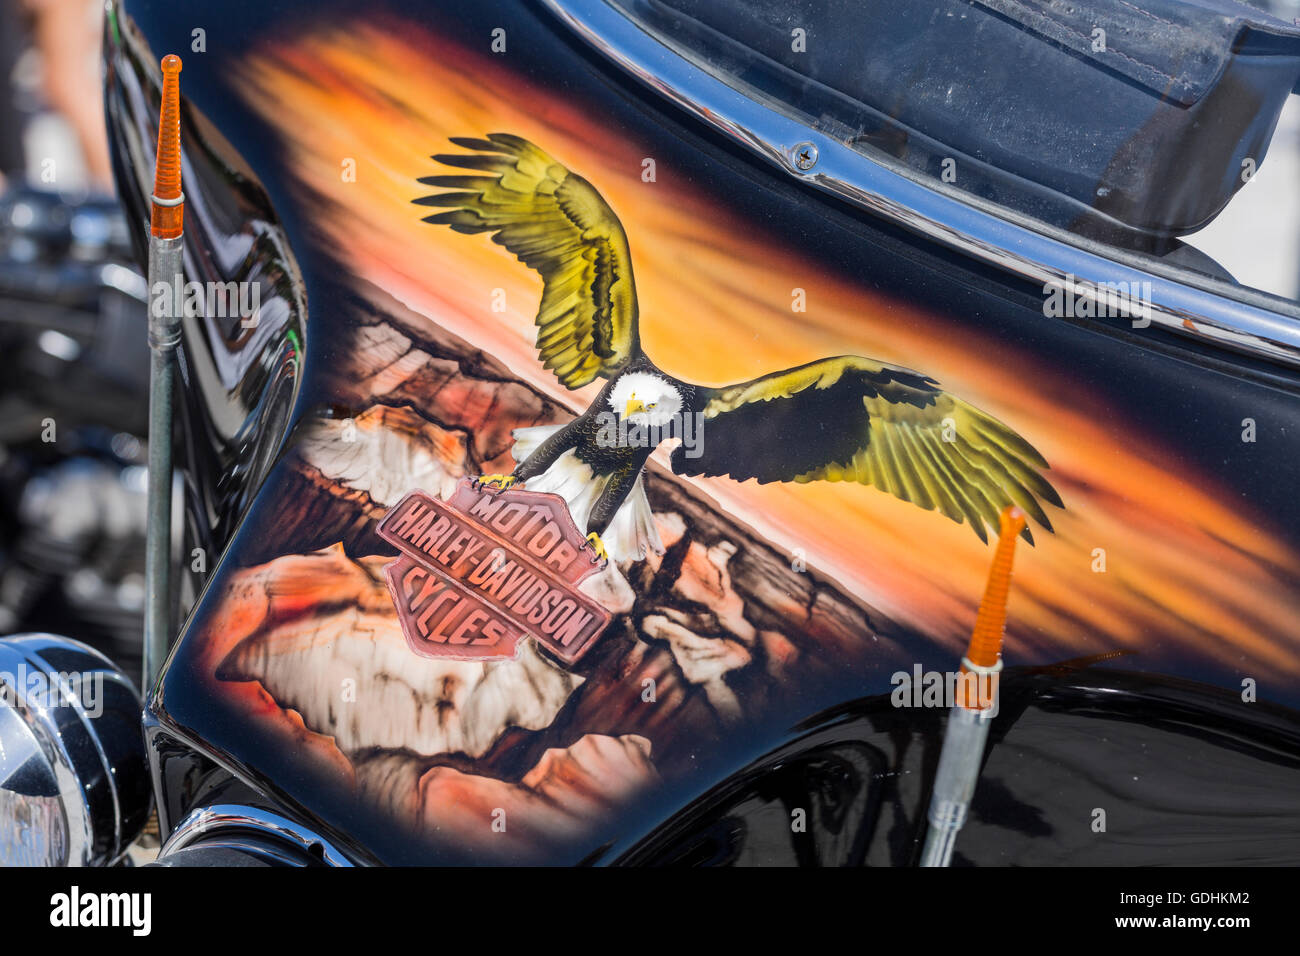 Travail de peinture personnalisée sur une Harley Davidson à l'American voitures et motos rassemblement dans la Plaza de la basilique de candelaria, Tenerife. Banque D'Images